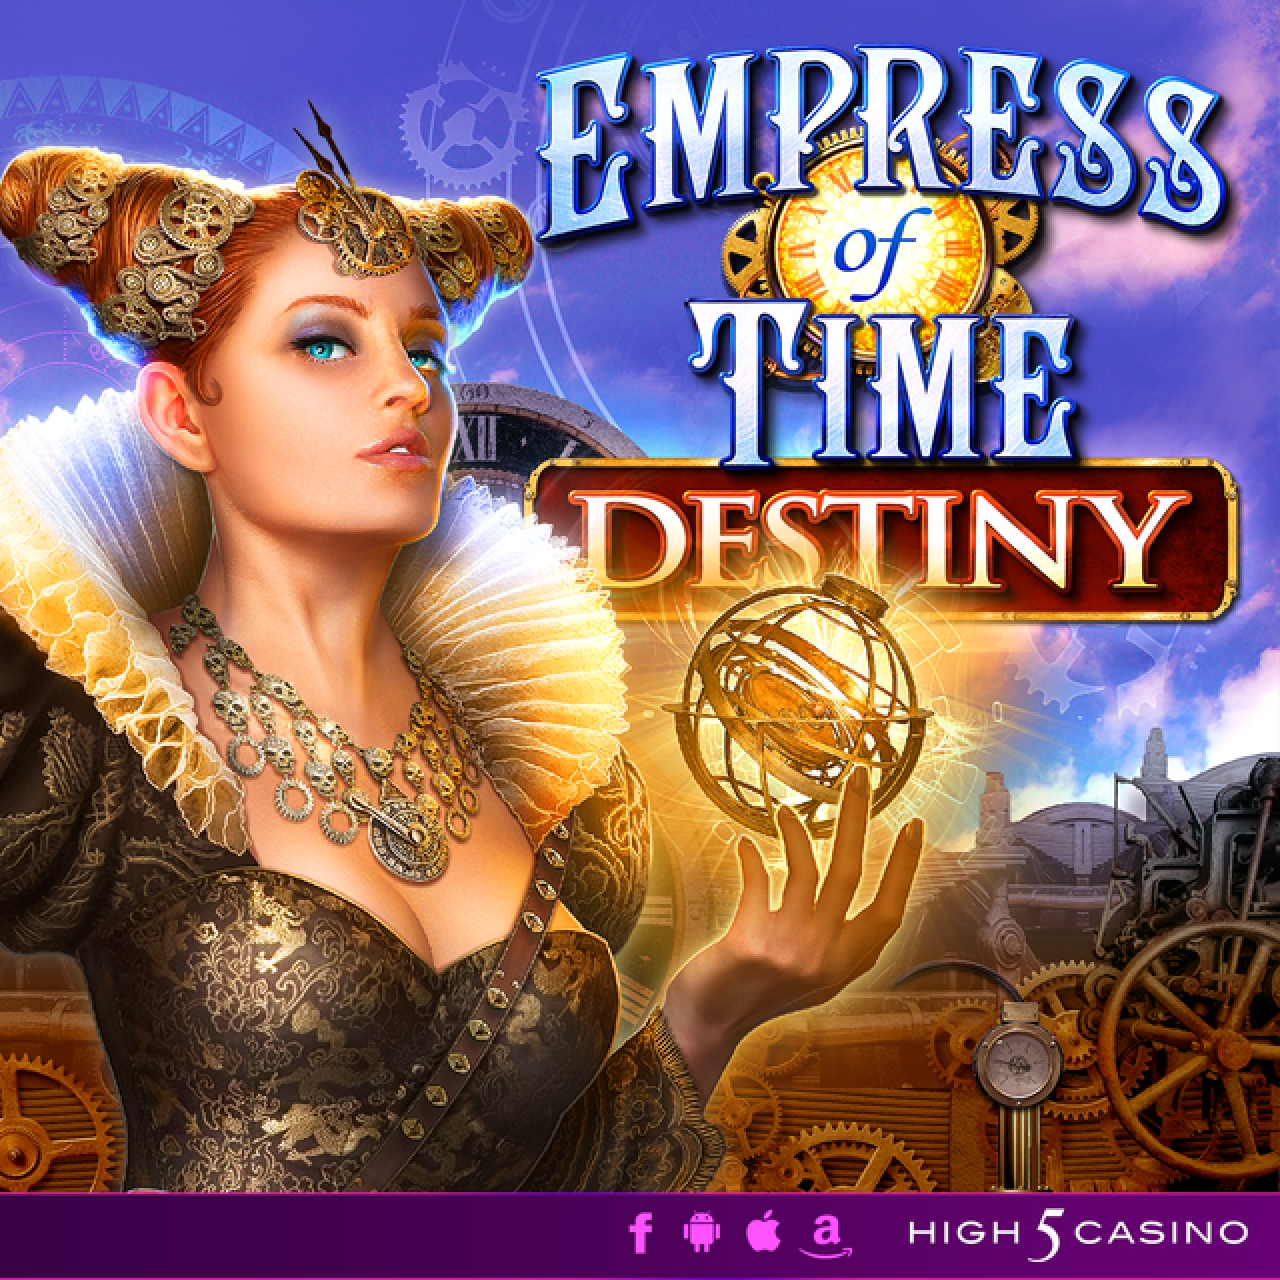 Empress of Time: Destiny demo